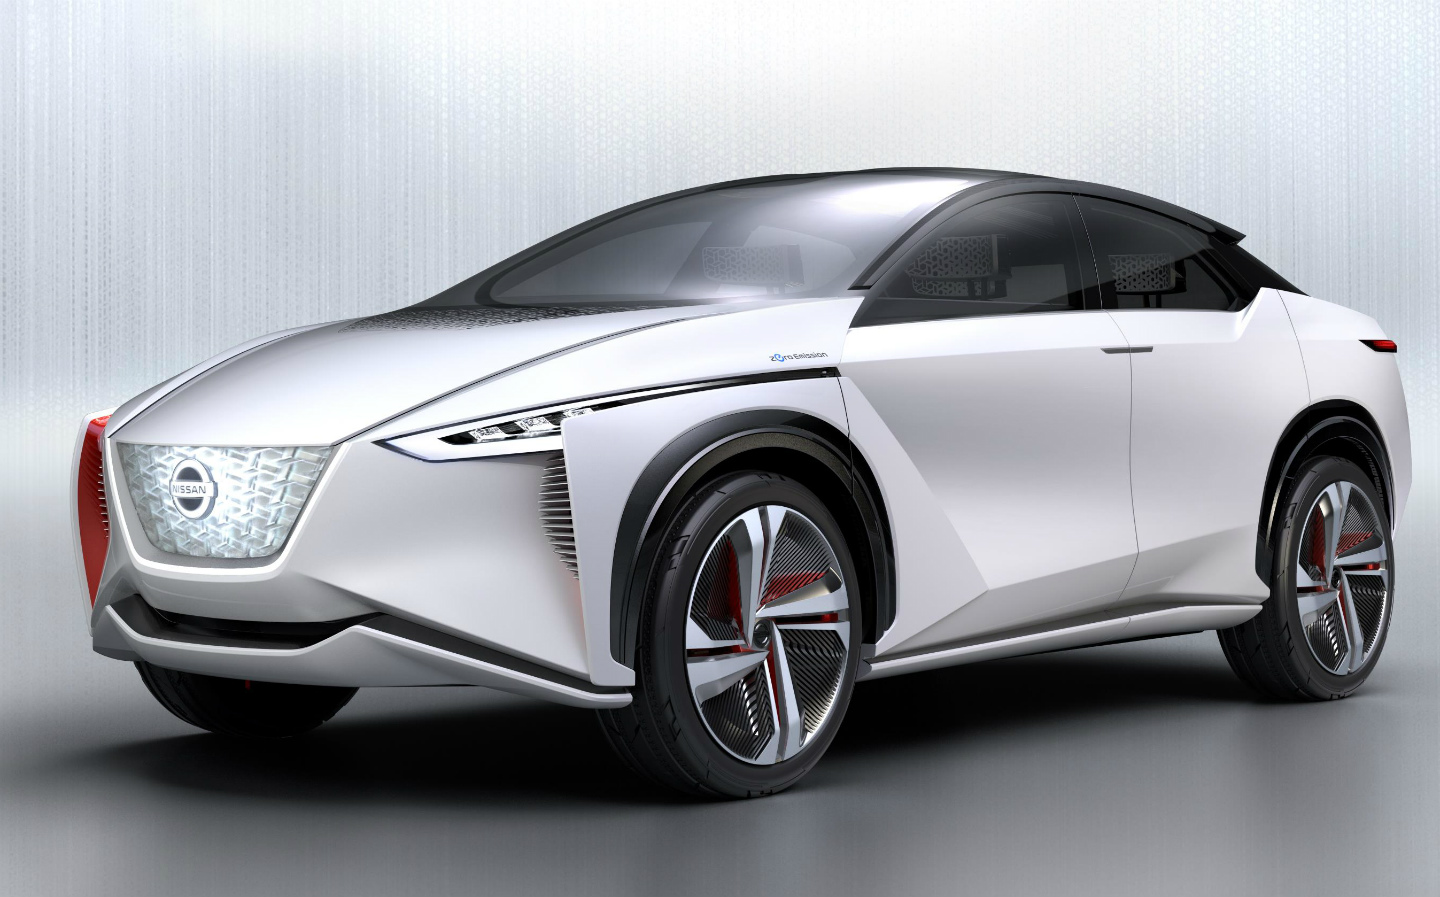 Nissan IMx concept